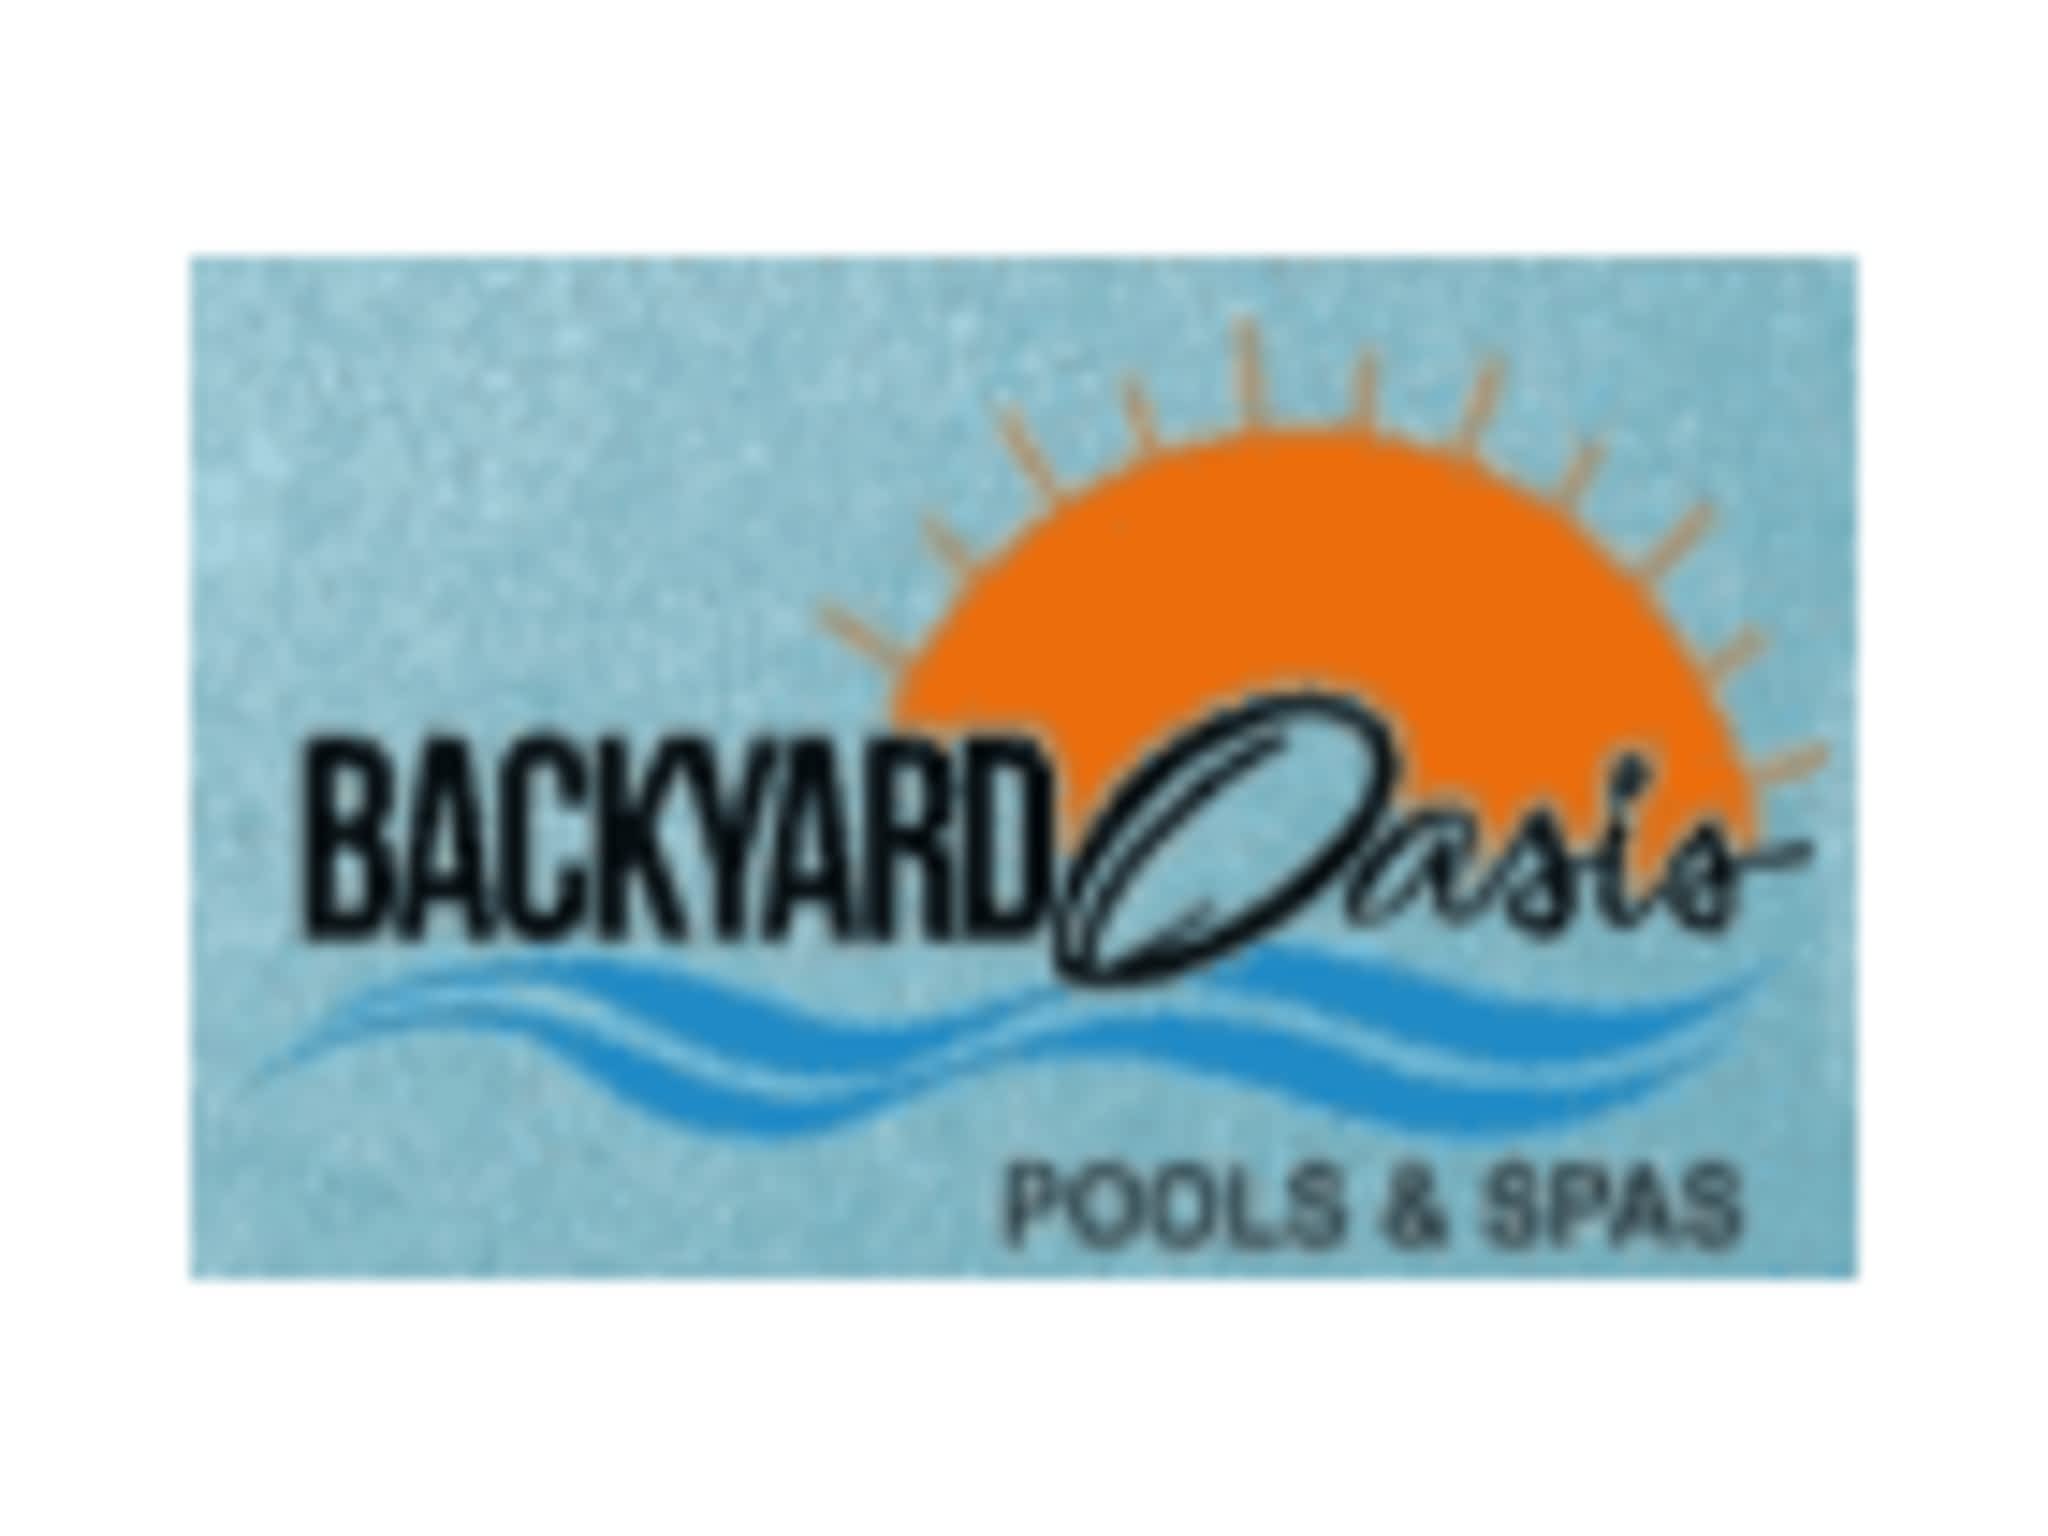 photo Backyard Oasis Pool And Spa